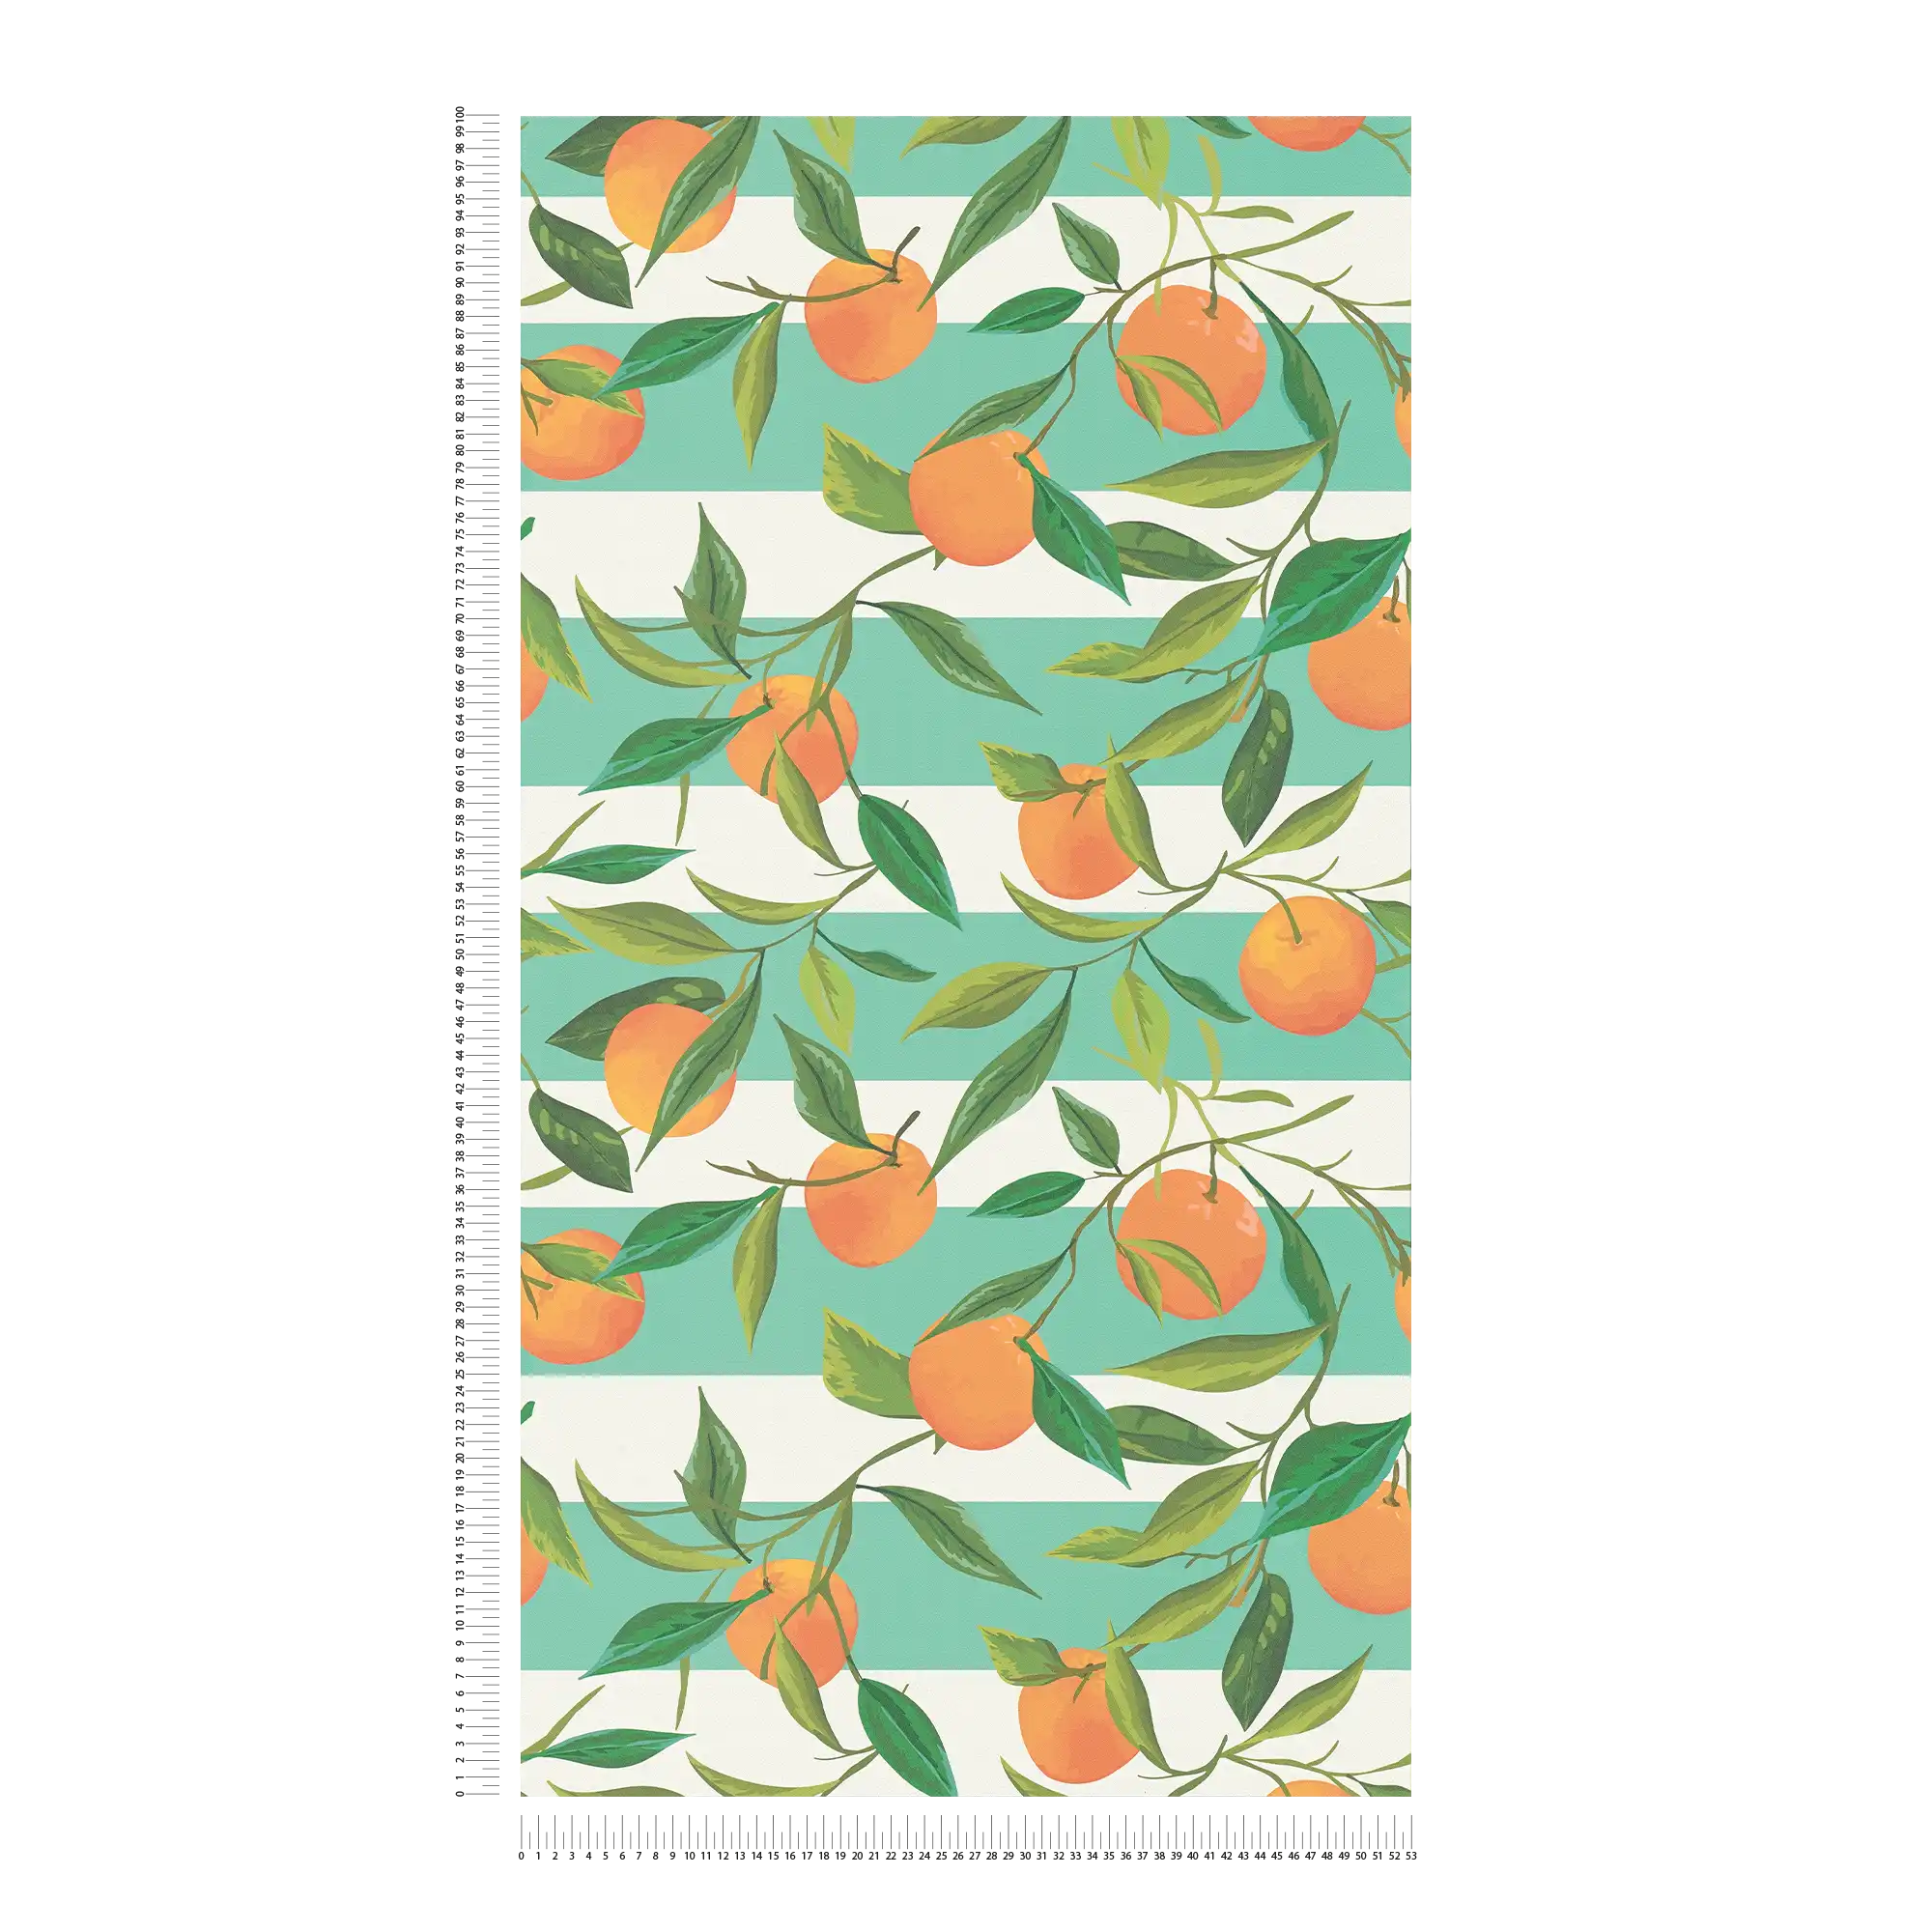             Gestreifte Vliestapete mit gemalten Orangen und Blättern – türkis, orange, grün
        